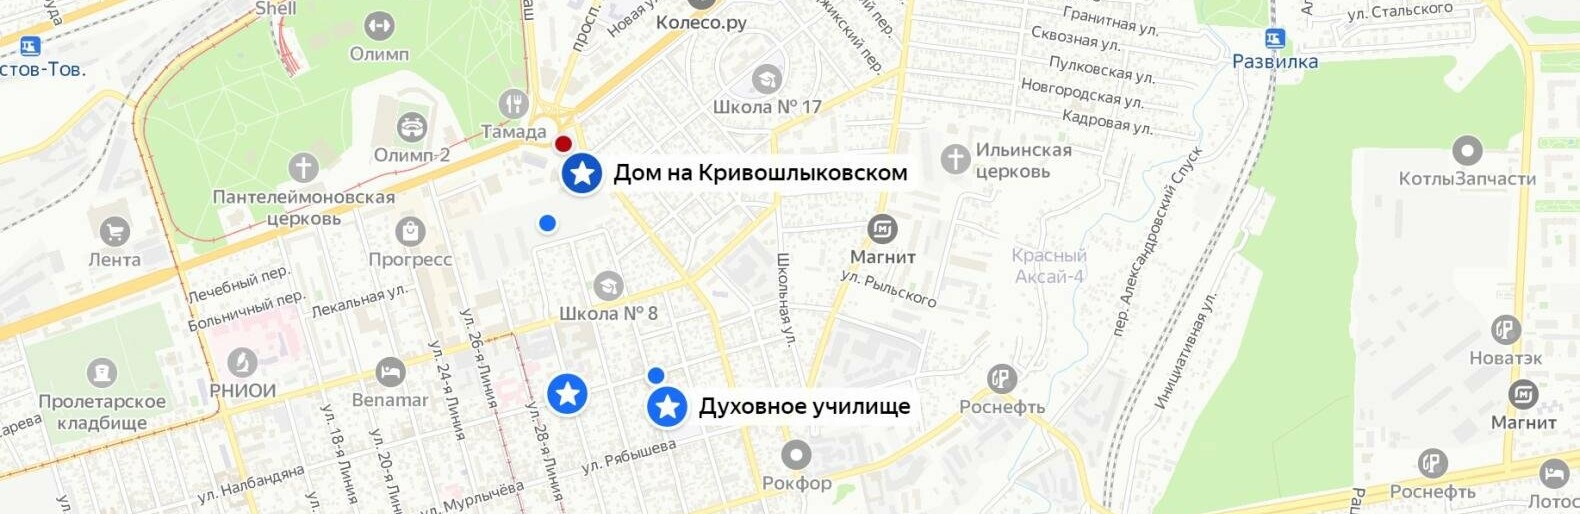 Ростовский дом на Кривошлыковском, 4 стал достопримечательностью в Яндекс Картах